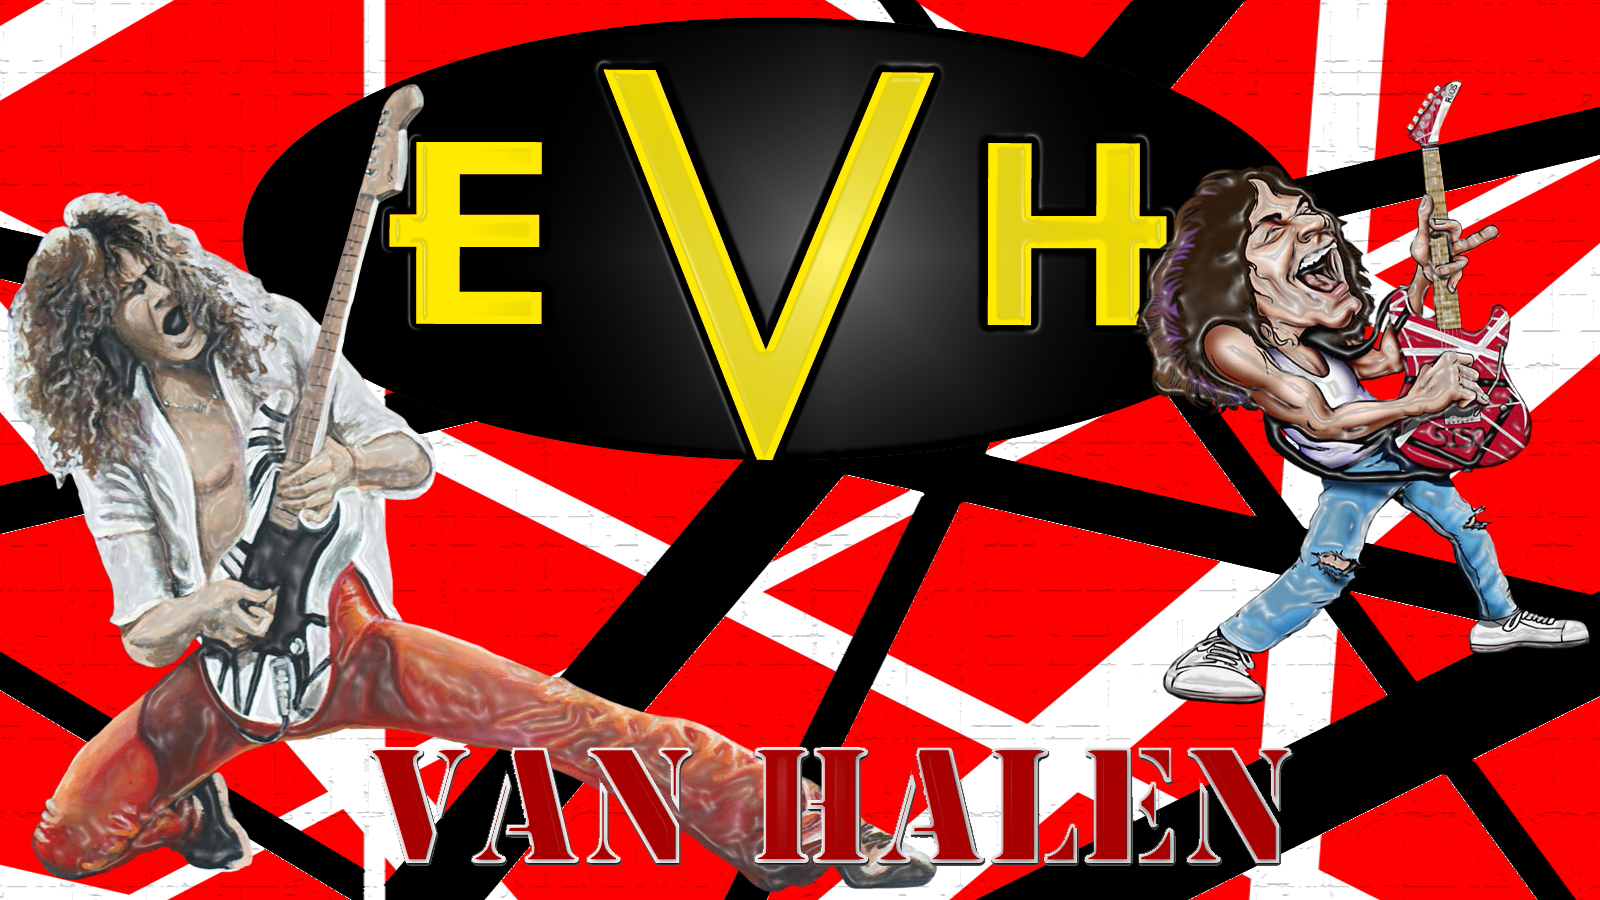 Eddie Van Halen Puter Wallpaper Desktop Background